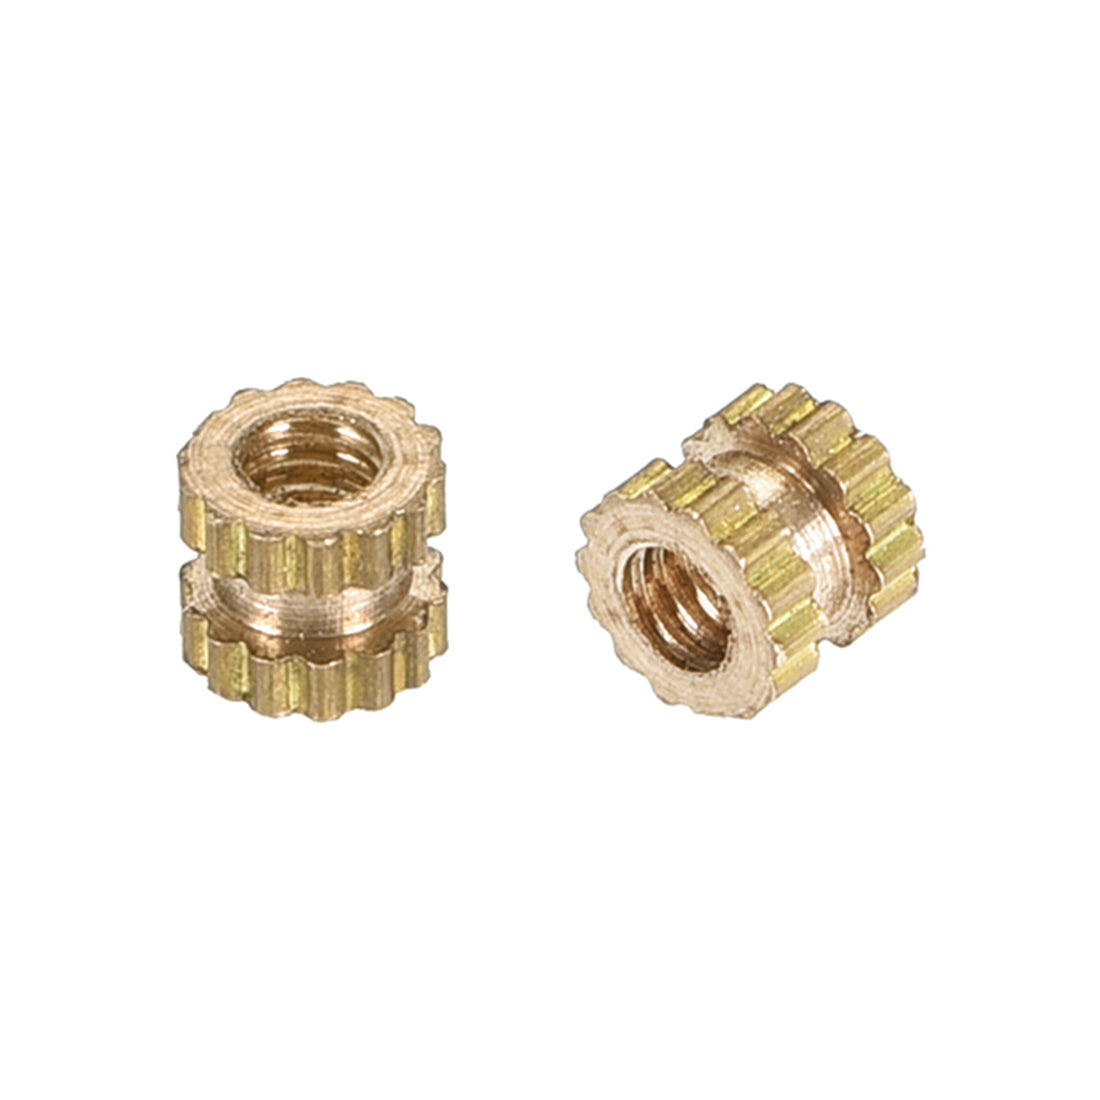 uxcell Uxcell Knurled Insert Nuts, M2 x 3mm(L) x 3.5mm(OD) Female Thread Brass Embedment Assortment Kit, 50 Pcs